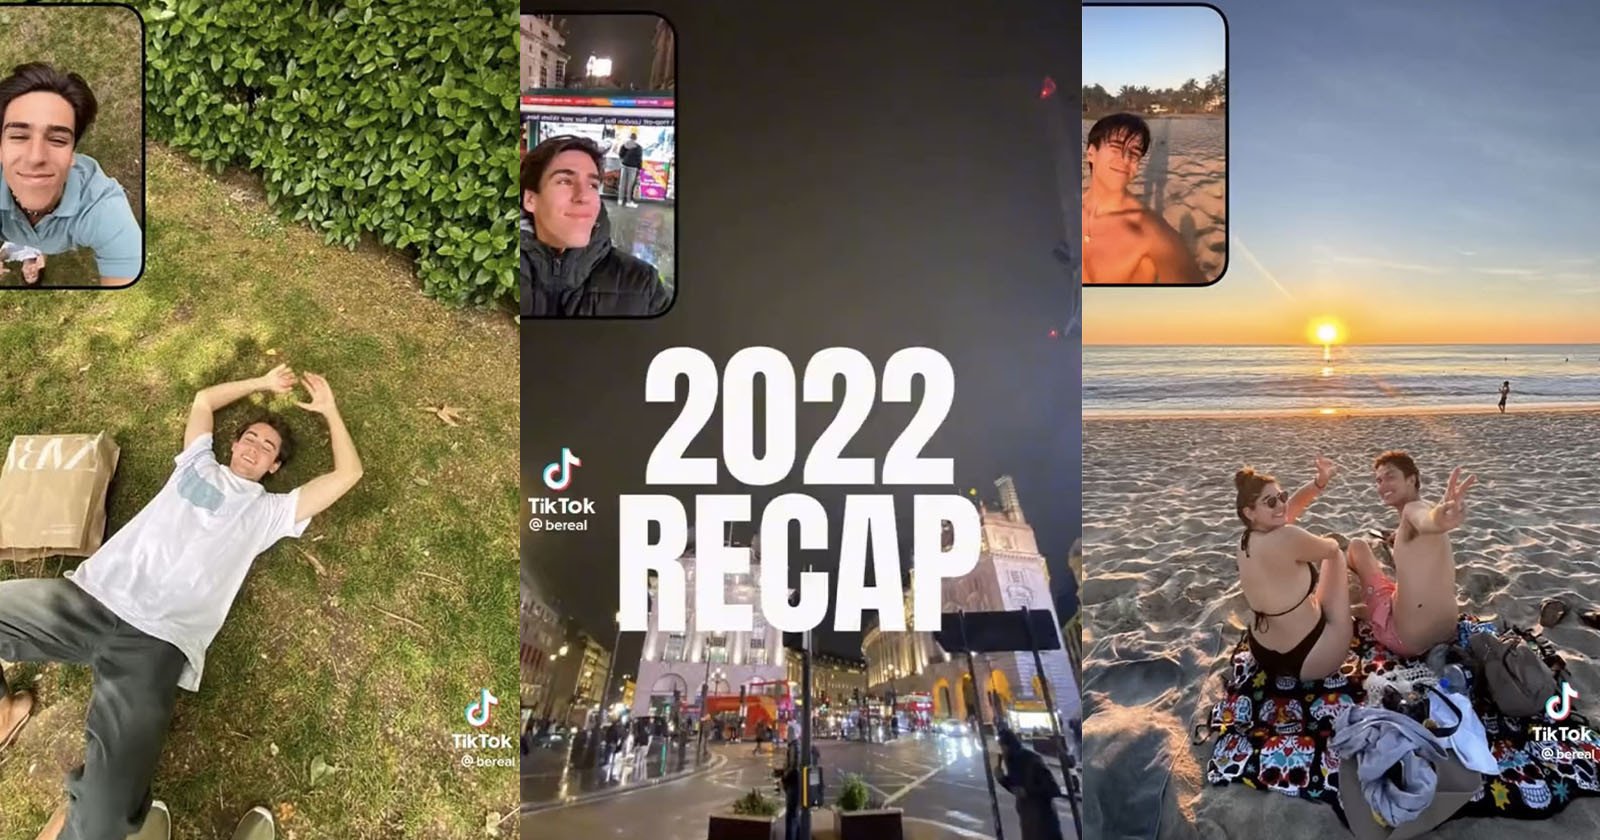  bereal turns photos into 2022 recap video but 